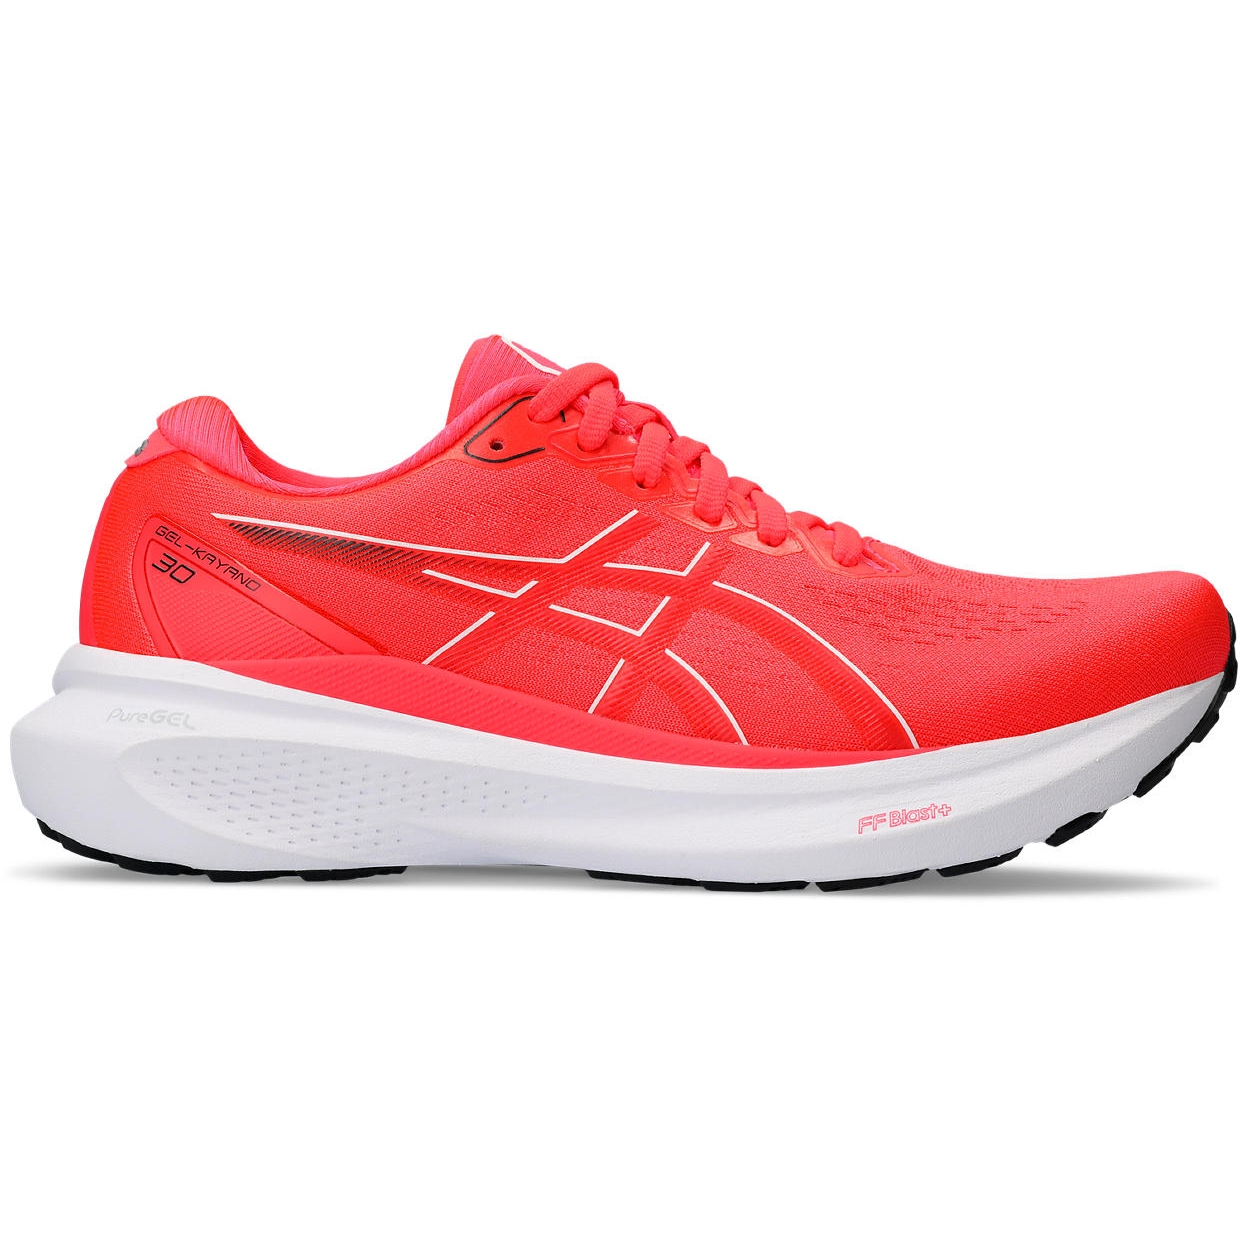 Produktbild von asics GEL-Kayano 30 Damen Laufschuhe - diva pink/electric red